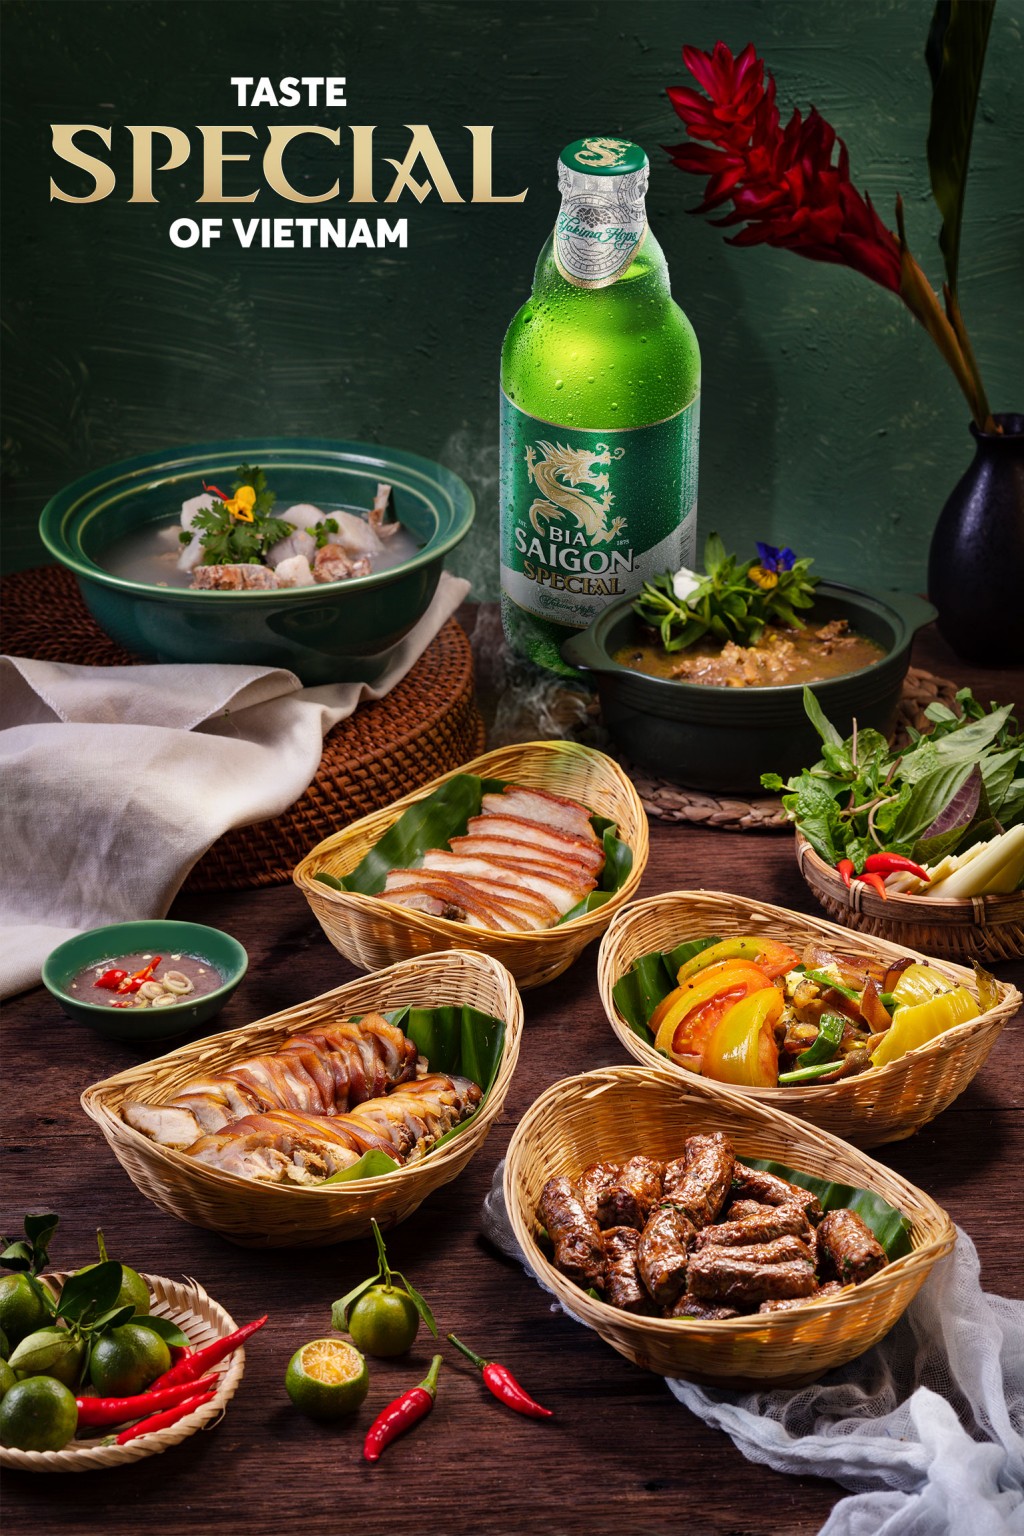 Quảng bá văn hóa ẩm thực Việt Nam để qua đó góp phần thúc đẩy du lịch quốc gia là một trong những cam kết phát triển bền vững của SABECO và Bia Saigon